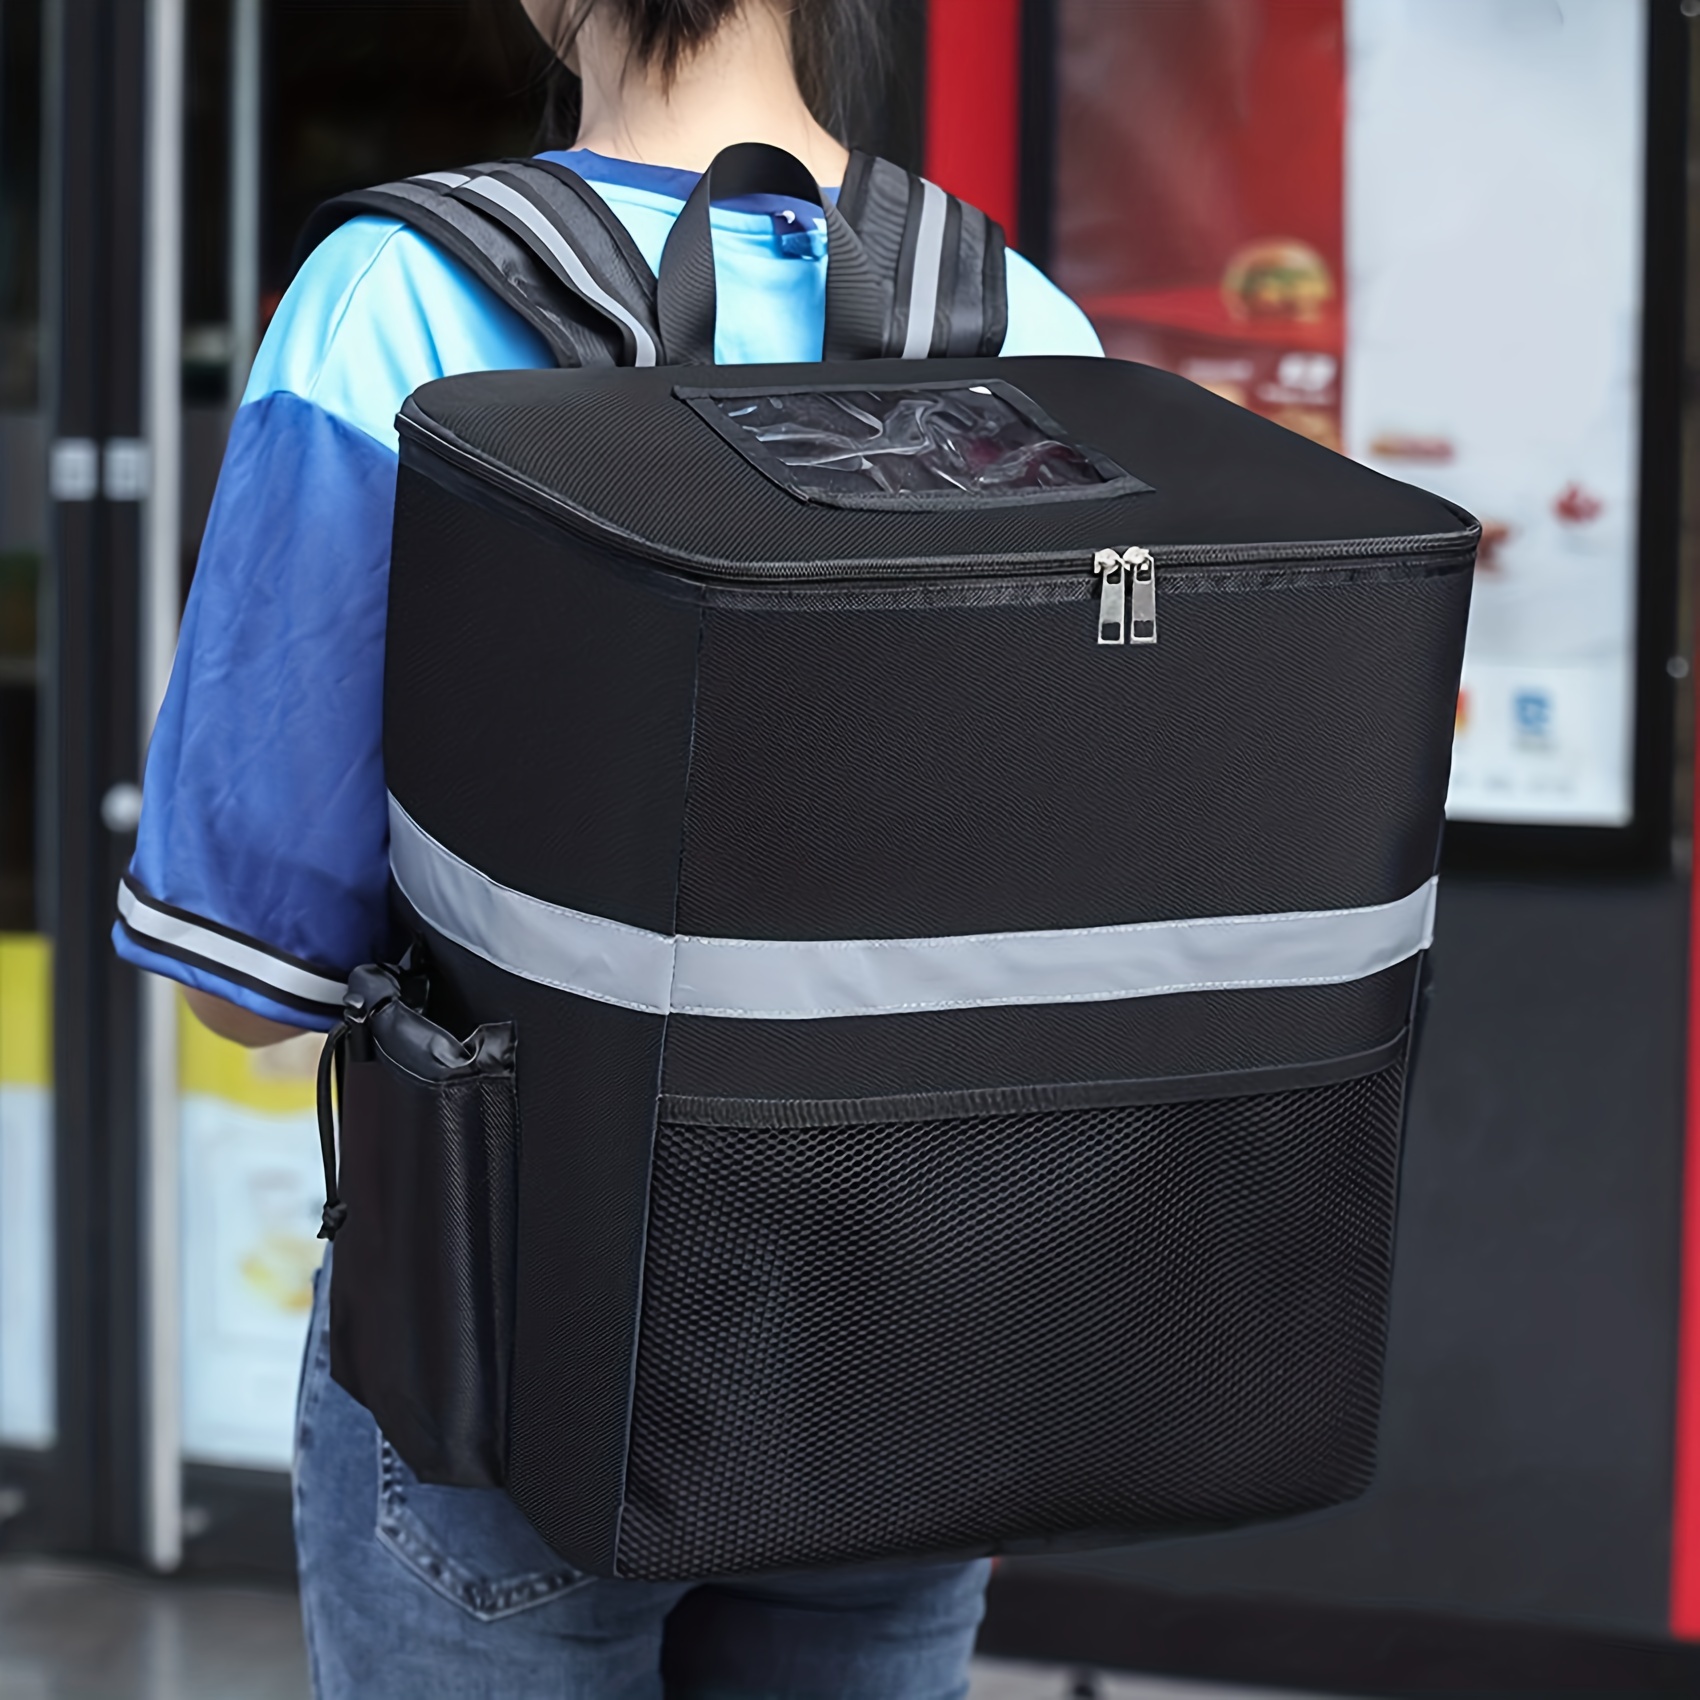 DENUONISS-mochila térmica impermeable de 20L, bolsa de refrigeración  gruesa, grande, aislada, para Picnic